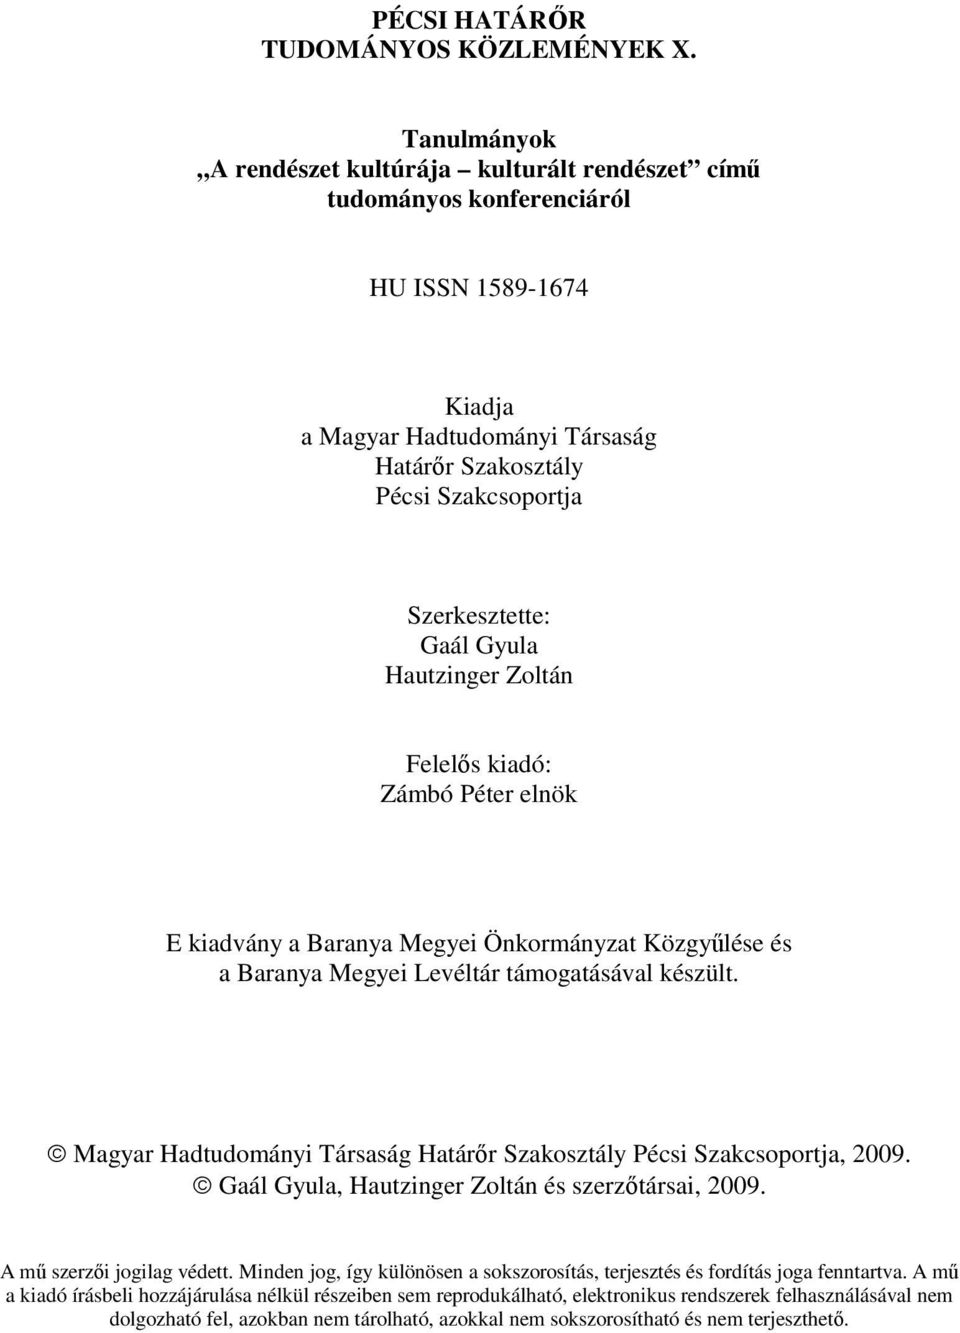 Gaál Gyula Hautzinger Zoltán Felelıs kiadó: Zámbó Péter elnök E kiadvány a Baranya Megyei Önkormányzat Közgyőlése és a Baranya Megyei Levéltár támogatásával készült.